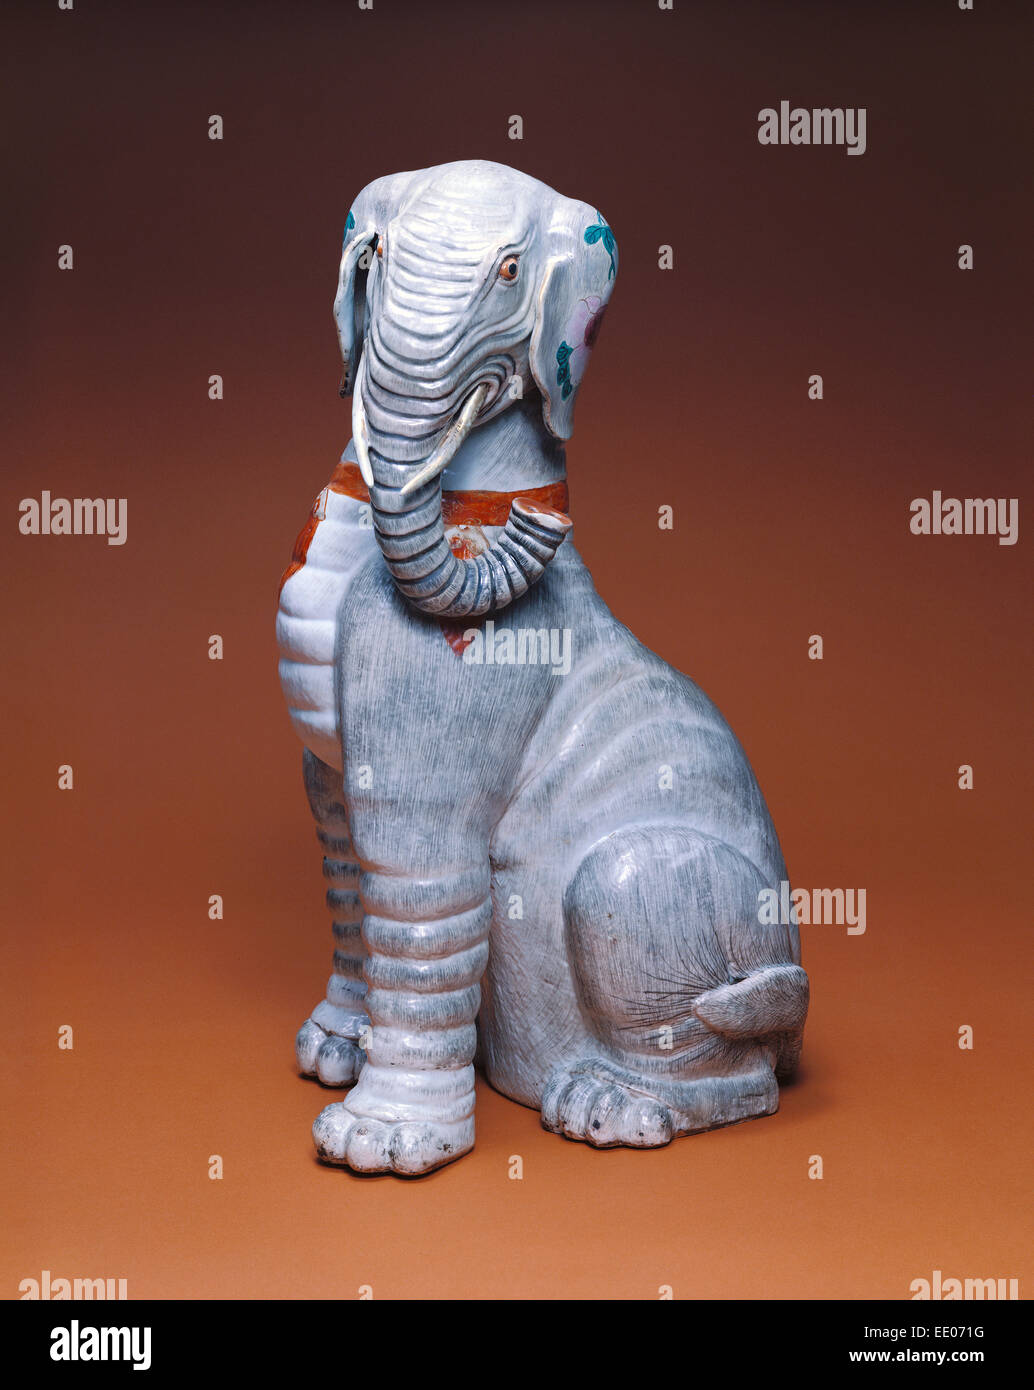 La figura di un elefante; sconosciuta; Cina, Asia; 1736 - 1795; Hard-incollare porcellana policroma decorazione smaltata, la doratura Foto Stock